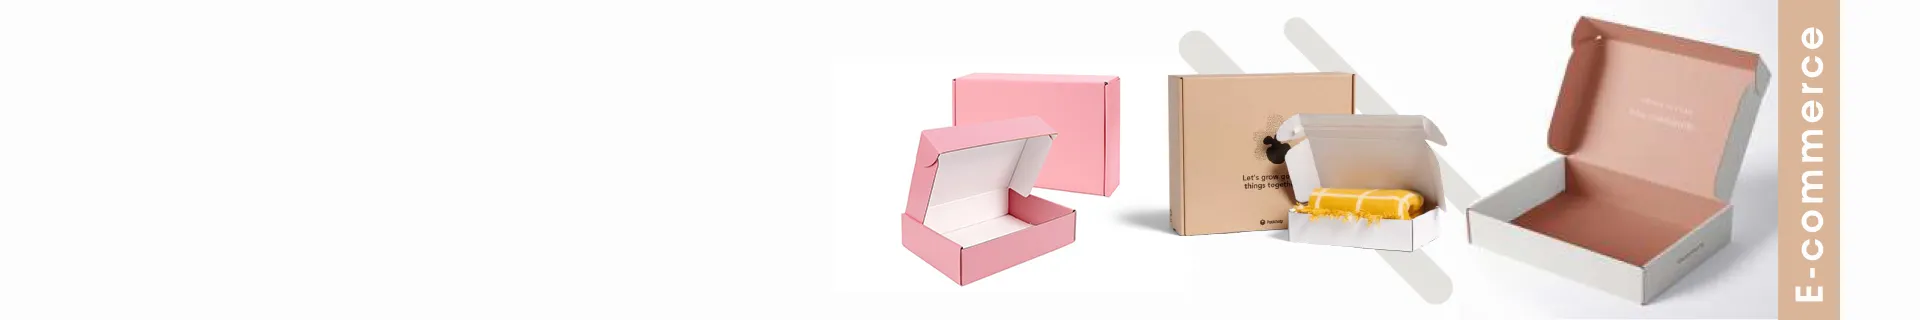 E-Commerce Packaging Box